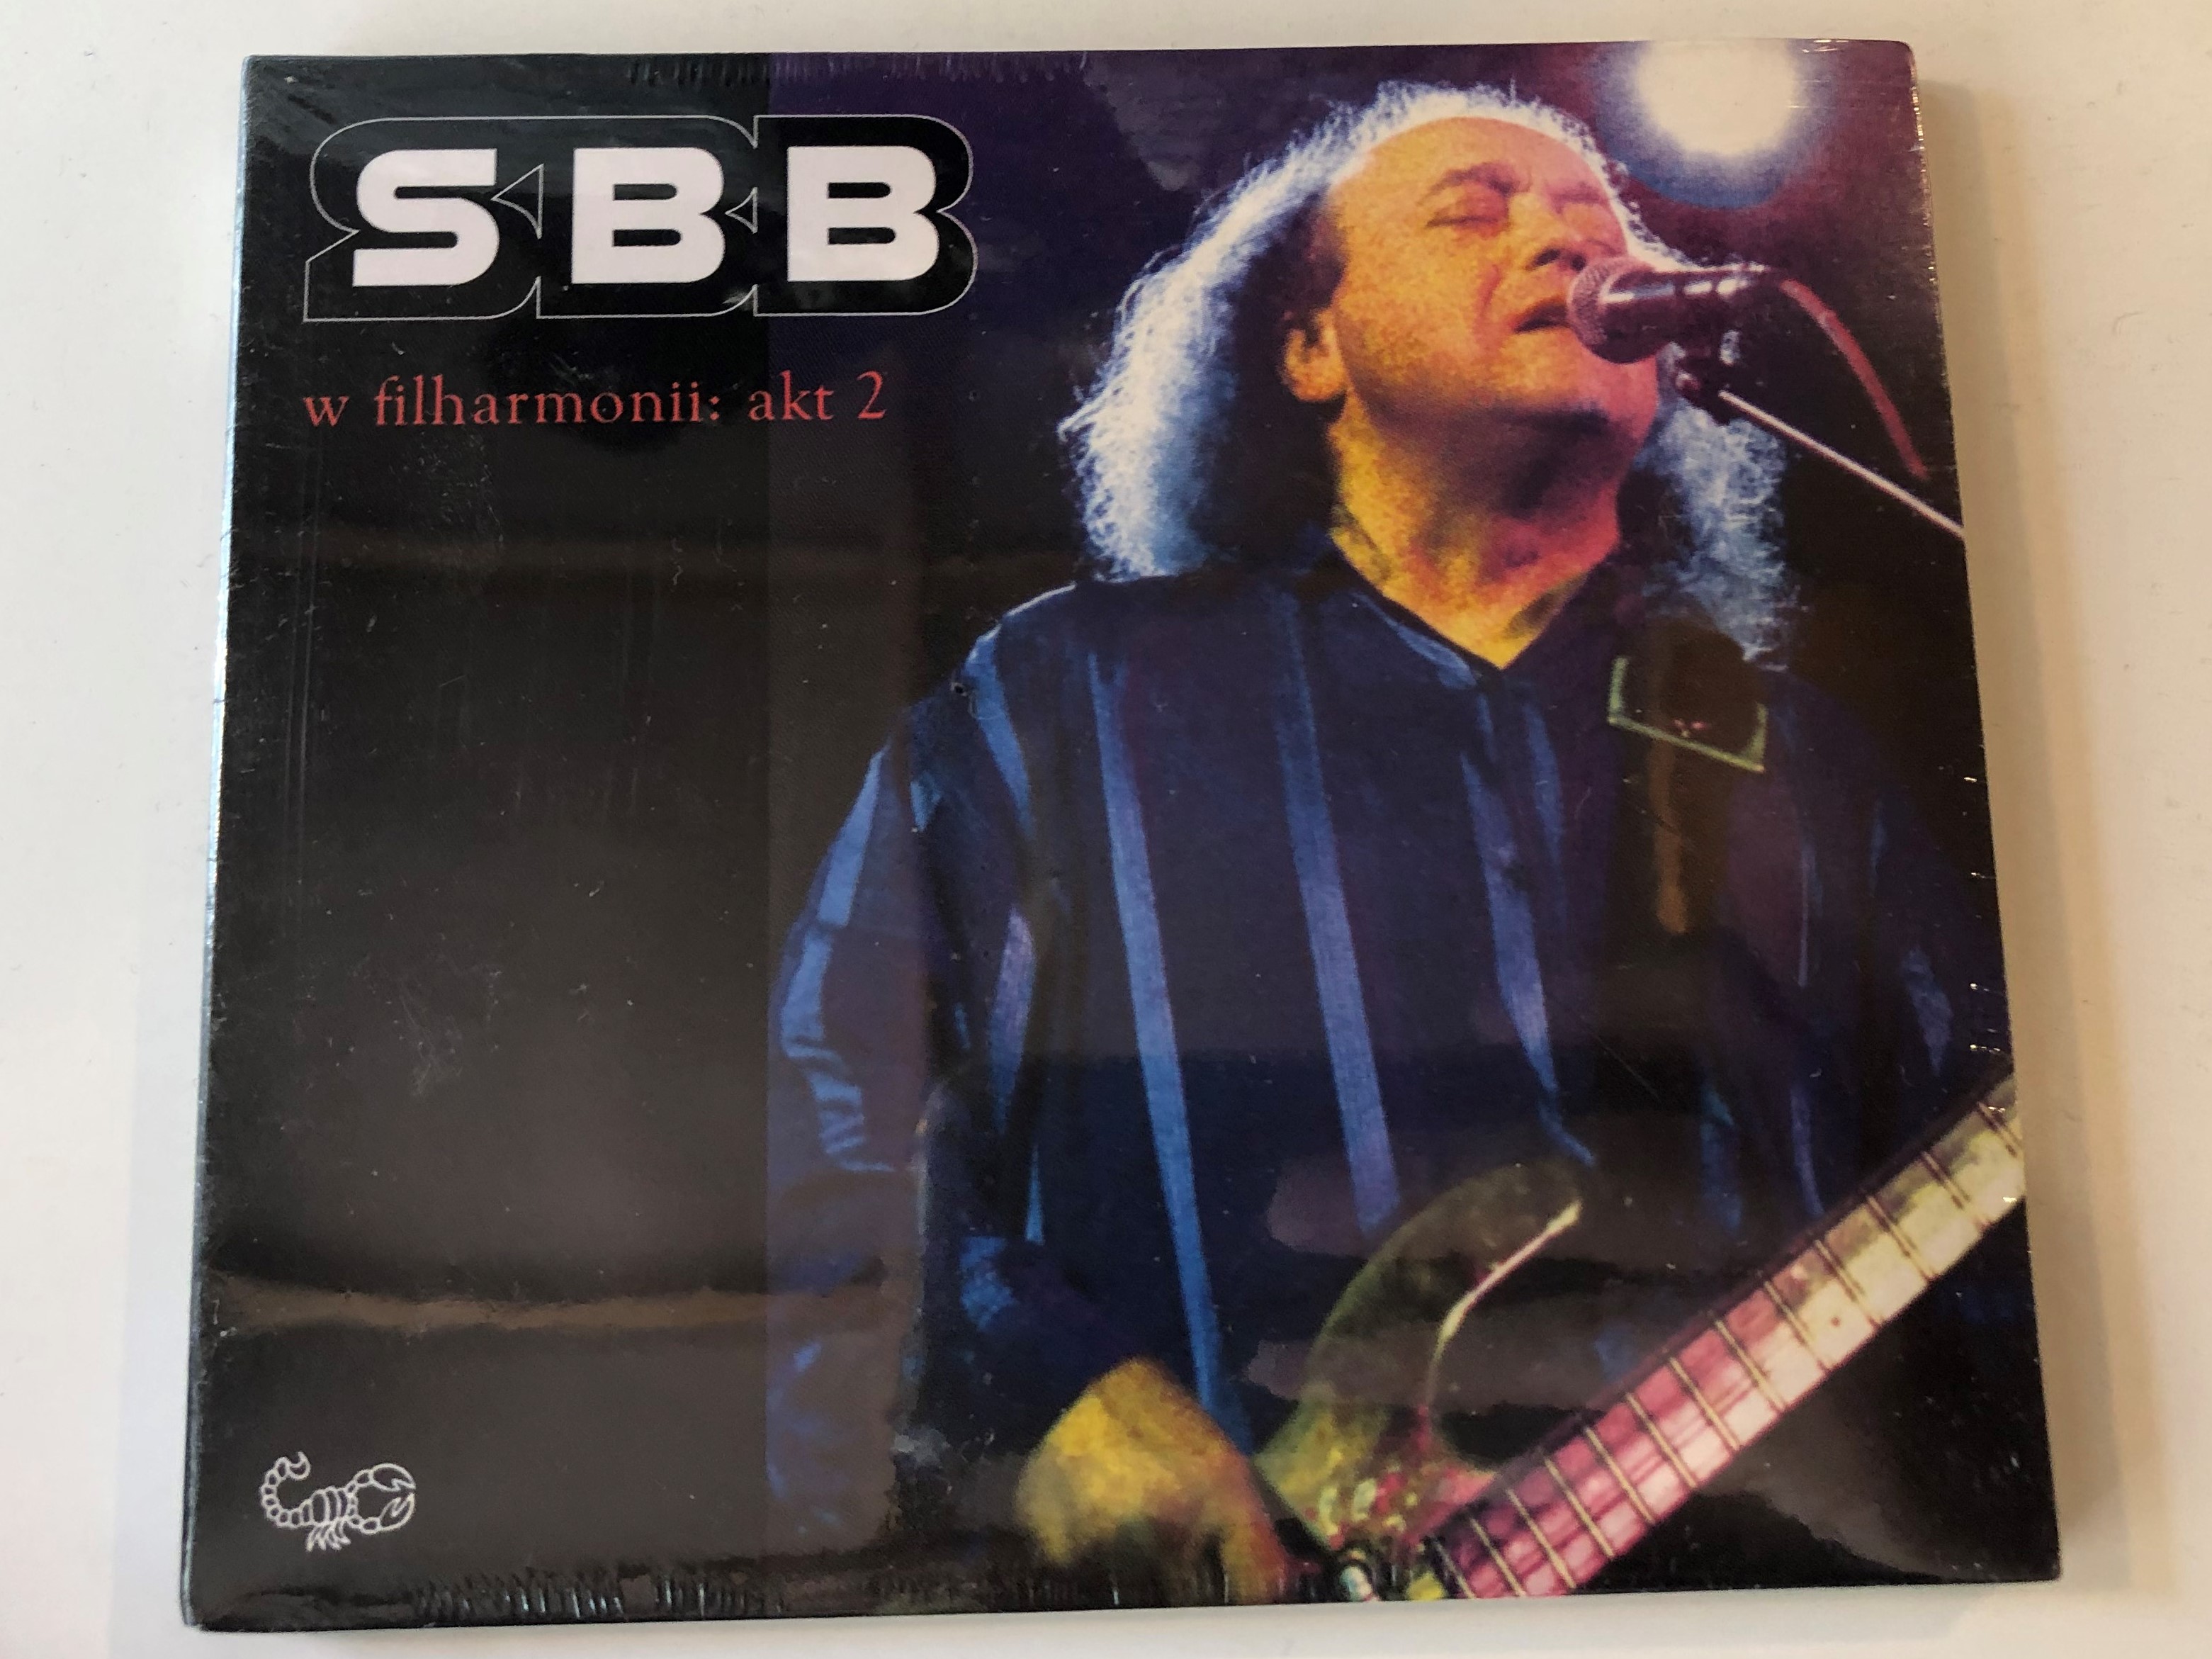 sbb-w-filharmonii-akt-2-metal-mind-productions-audio-cd-2005-5907785026179-1-.jpg